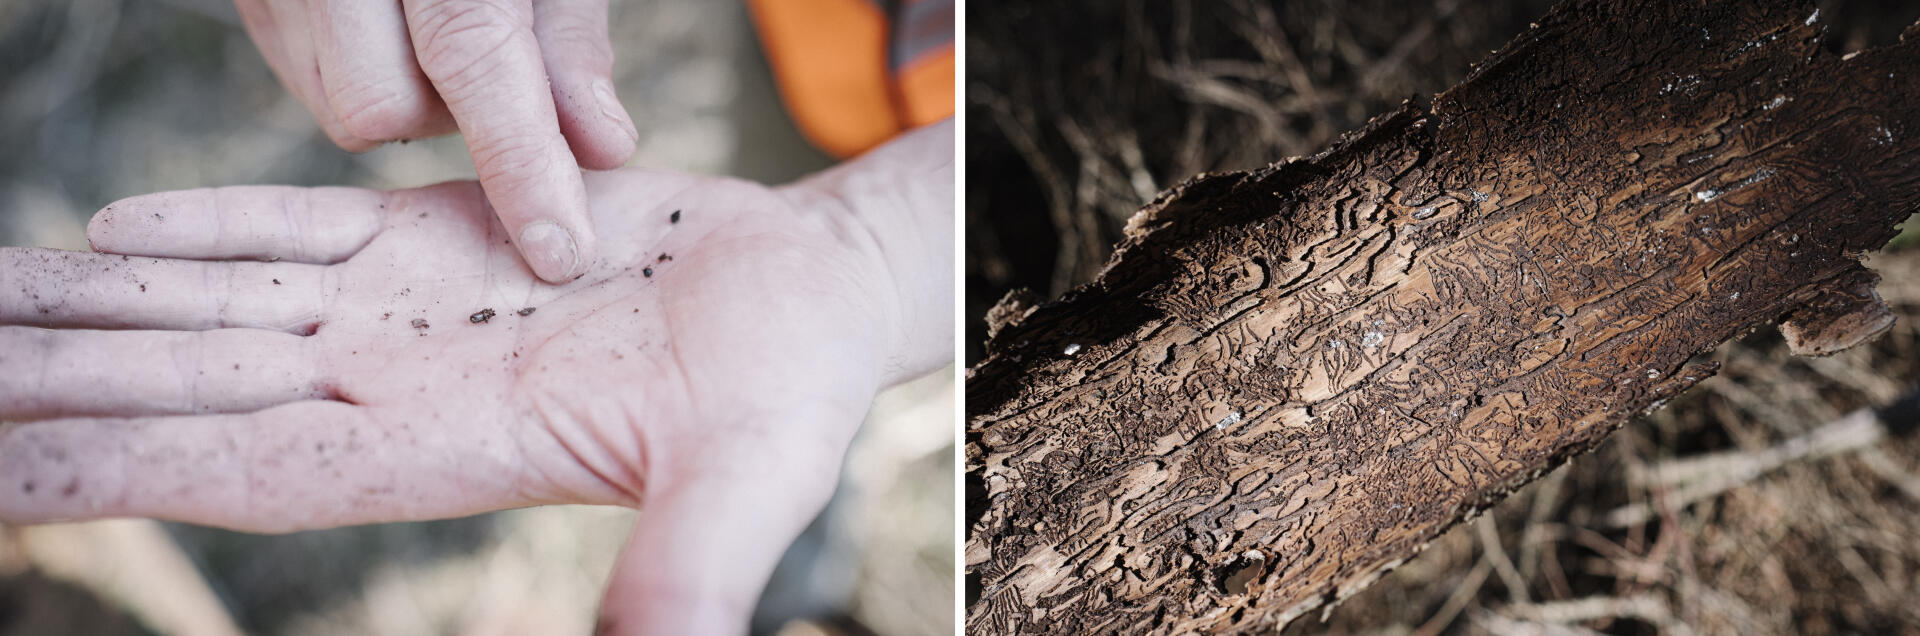 Un scolyte mort retrouvé dans une écorce, dans la forêt domaniale de Verdun, le 31 mars. Après s’être introduit dans le tronc de l’épicéa, le coléoptère se reproduit, puis ses larves creusent des galeries empêchant la sève de s’écouler normalement.